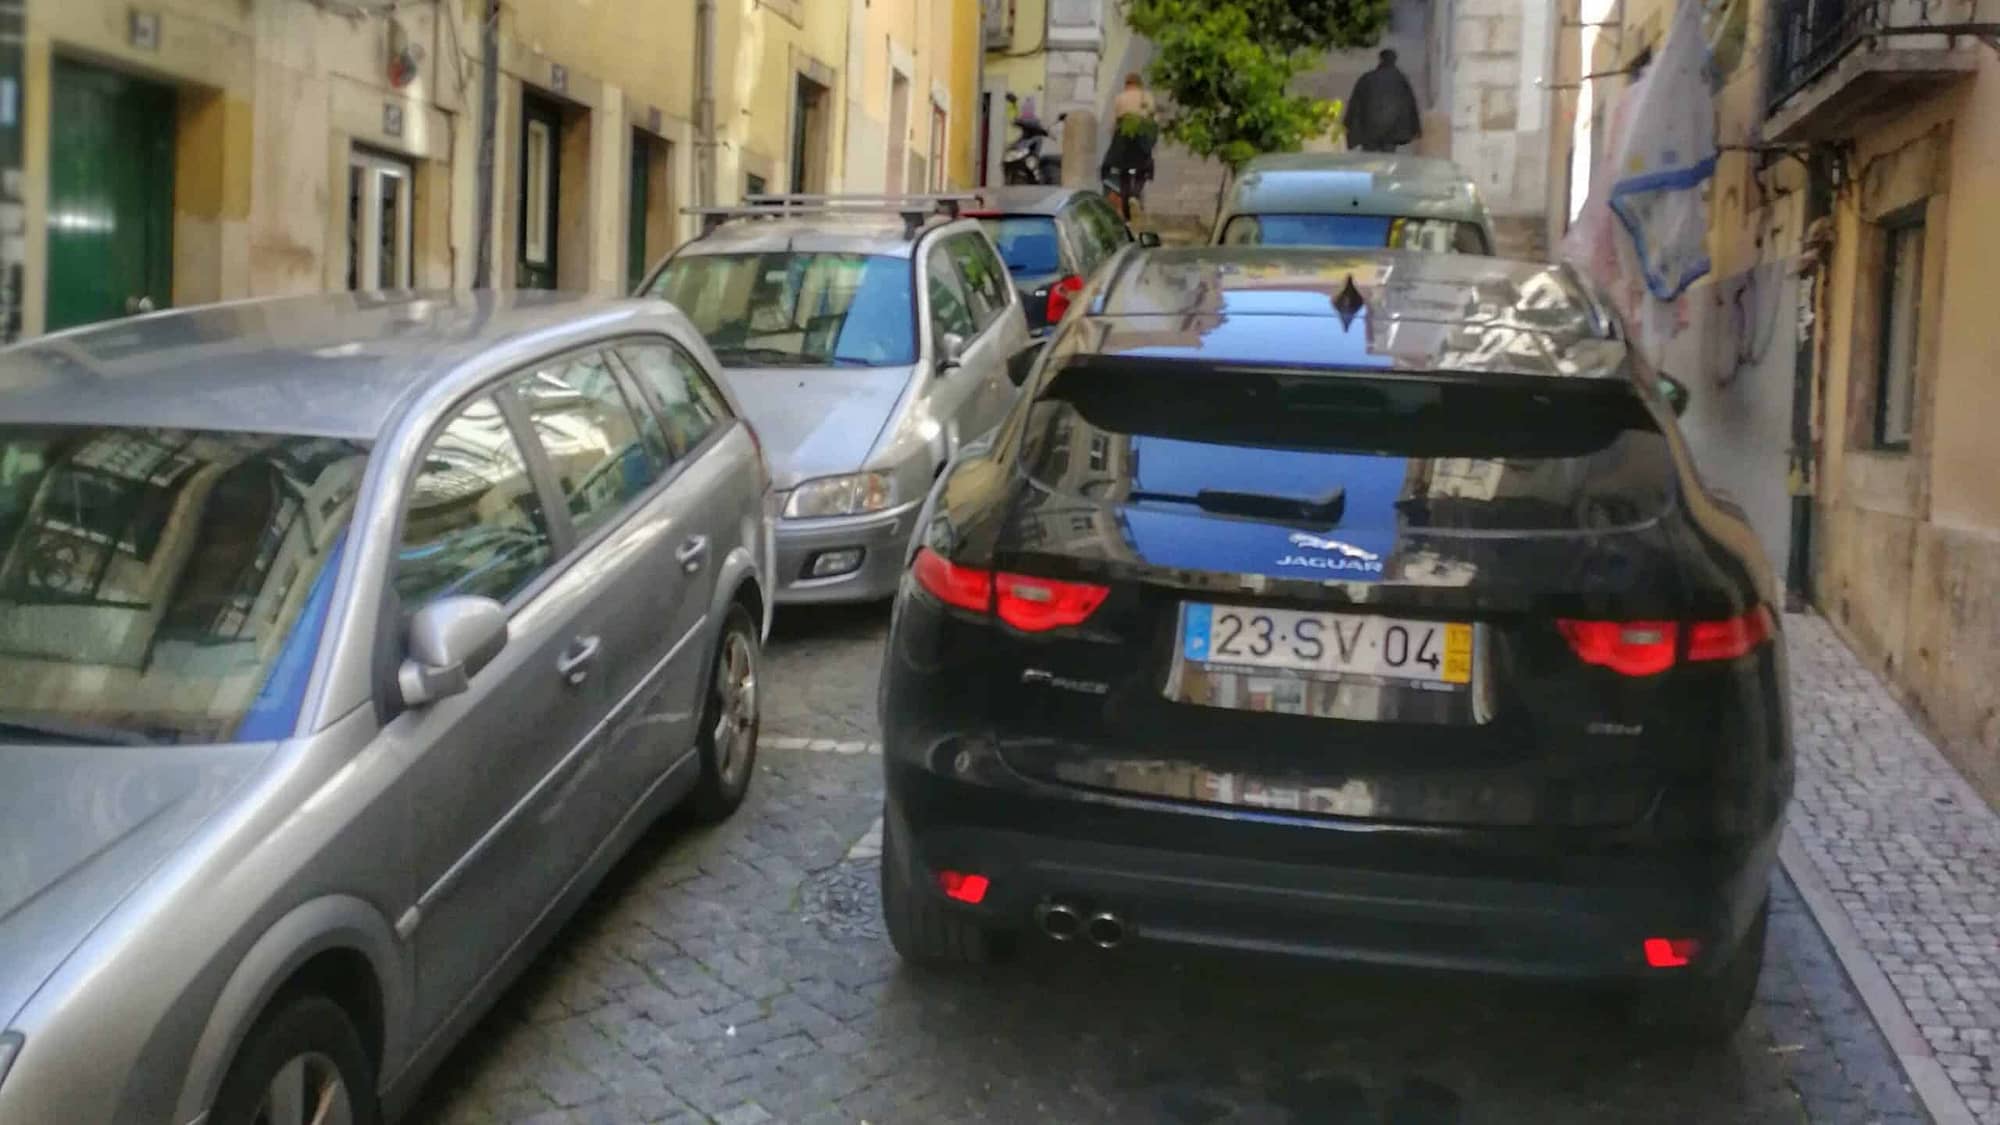 Le stationnement est compliqué à Lisbonne, surtout dans le centre ville il faut trouver des solutions pas chères voir gratuites